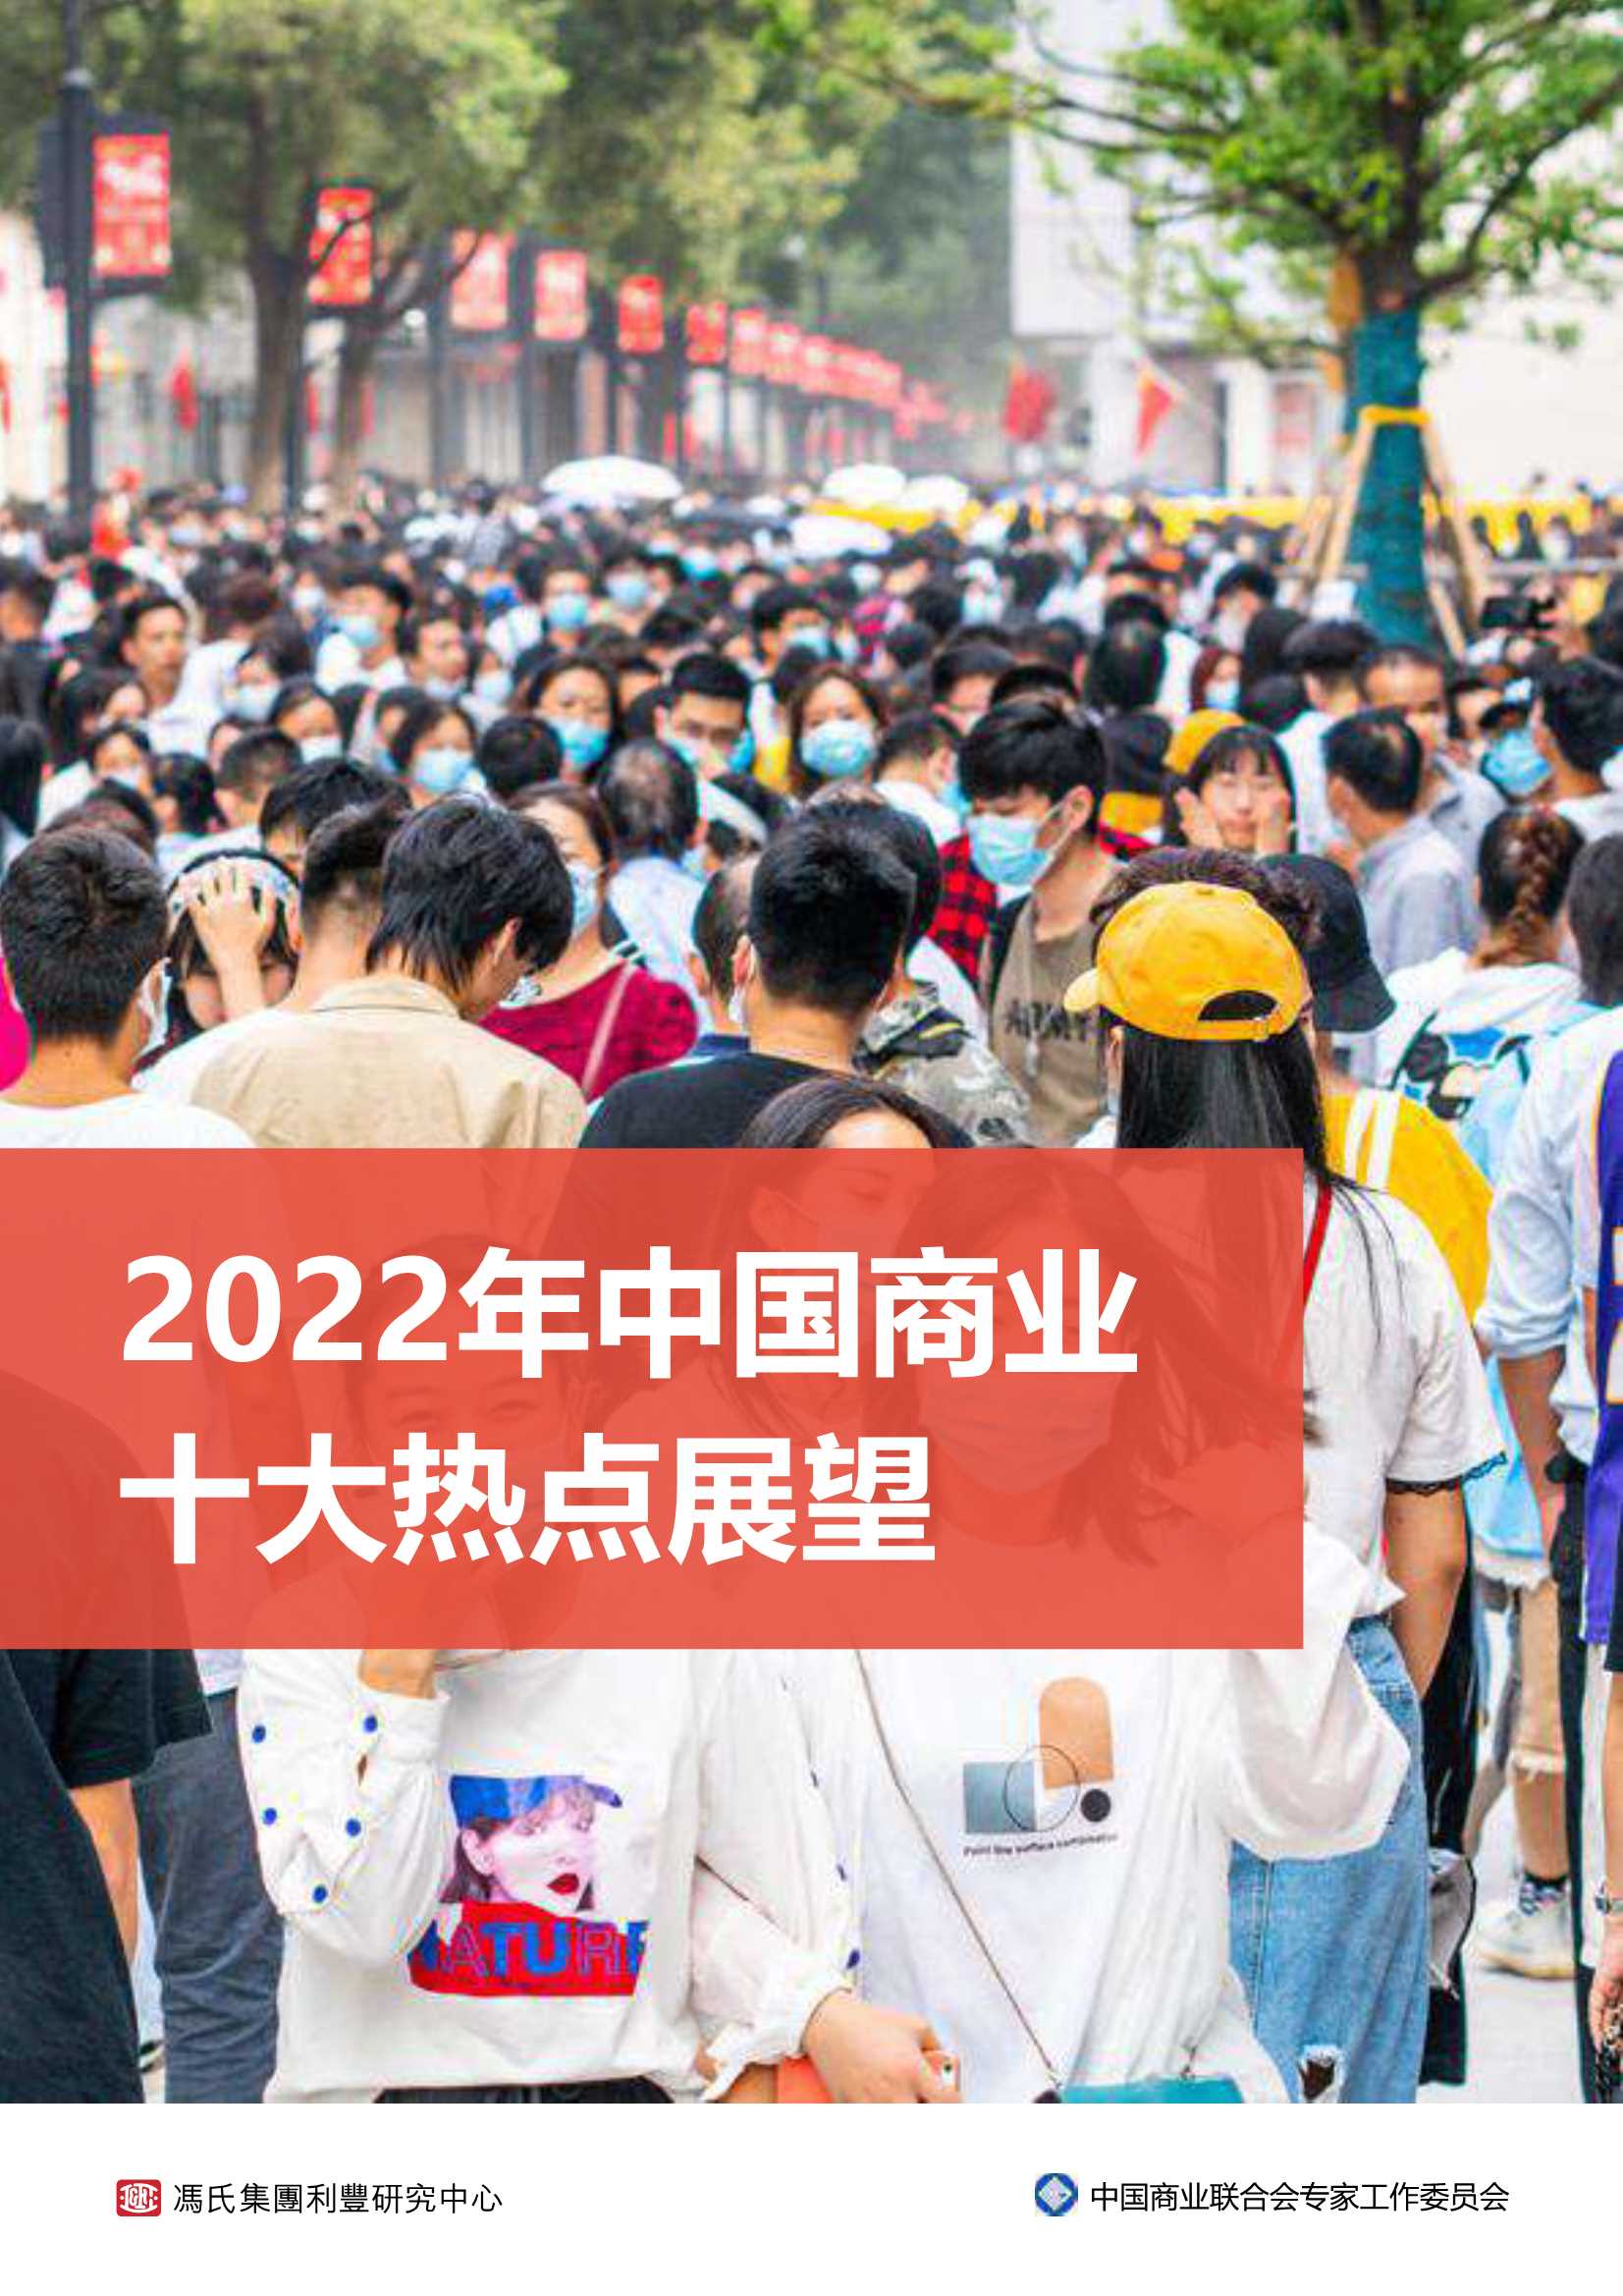 中国商业联合会专家工作委员会-2022年中国商业十大热点展望-2022.01-42页